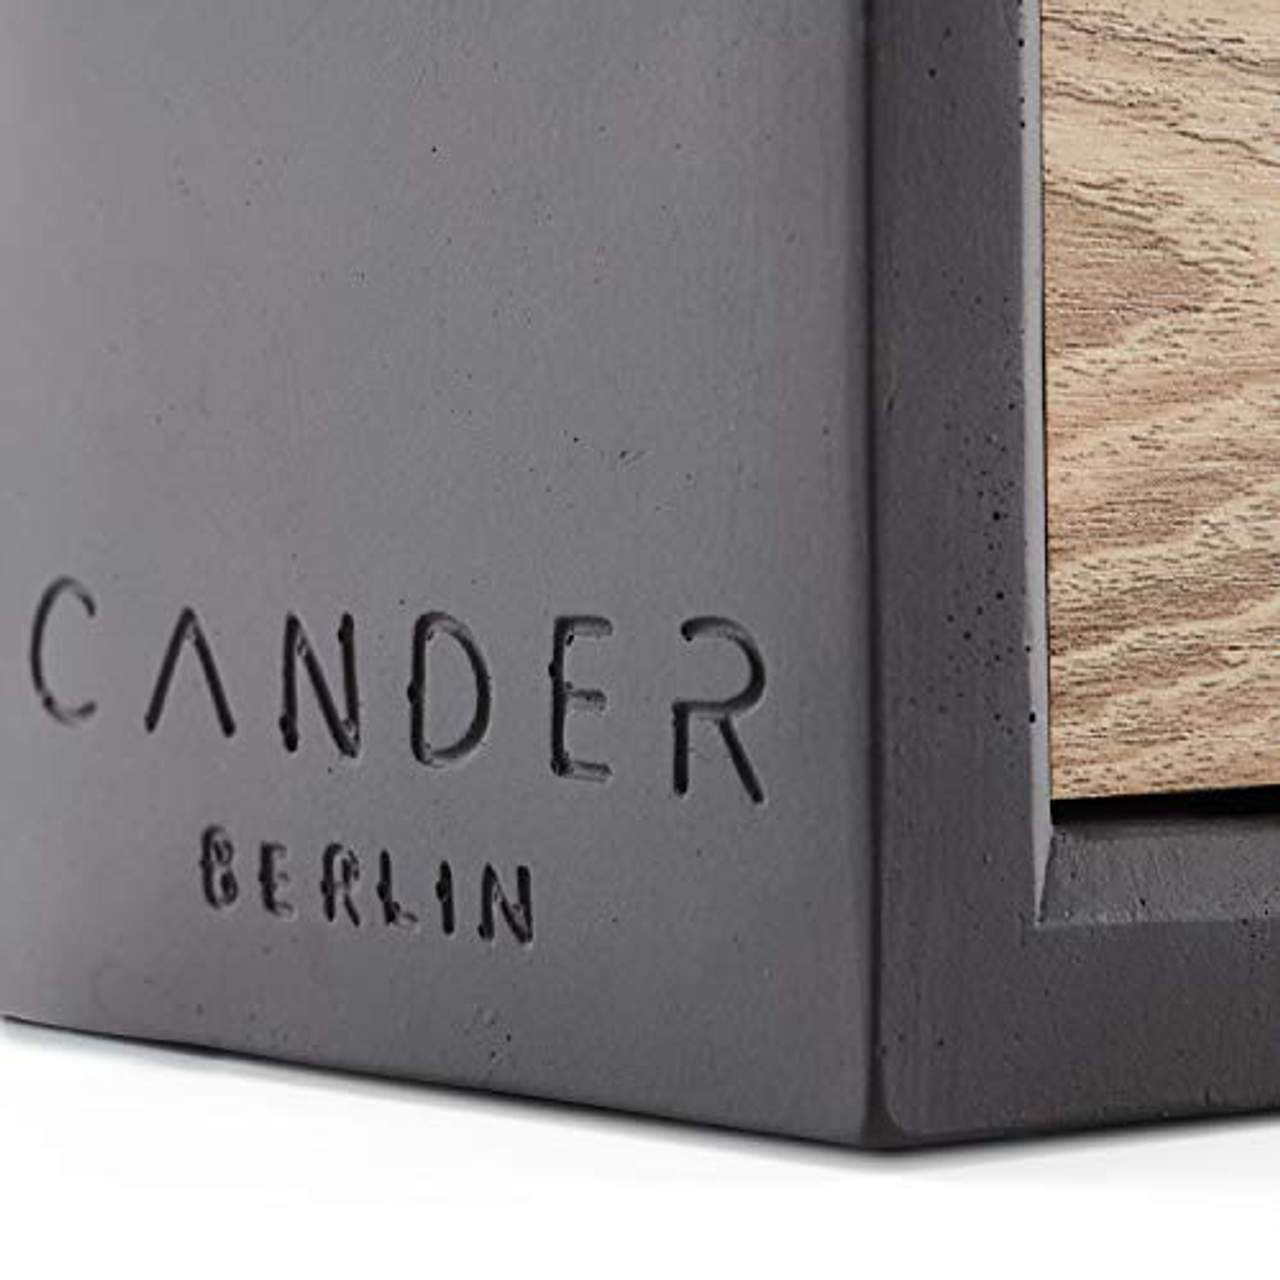 Cander Berlin MNU 6513 Tischuhr Wecker Beton Holz Betonuhr Würfel Digital